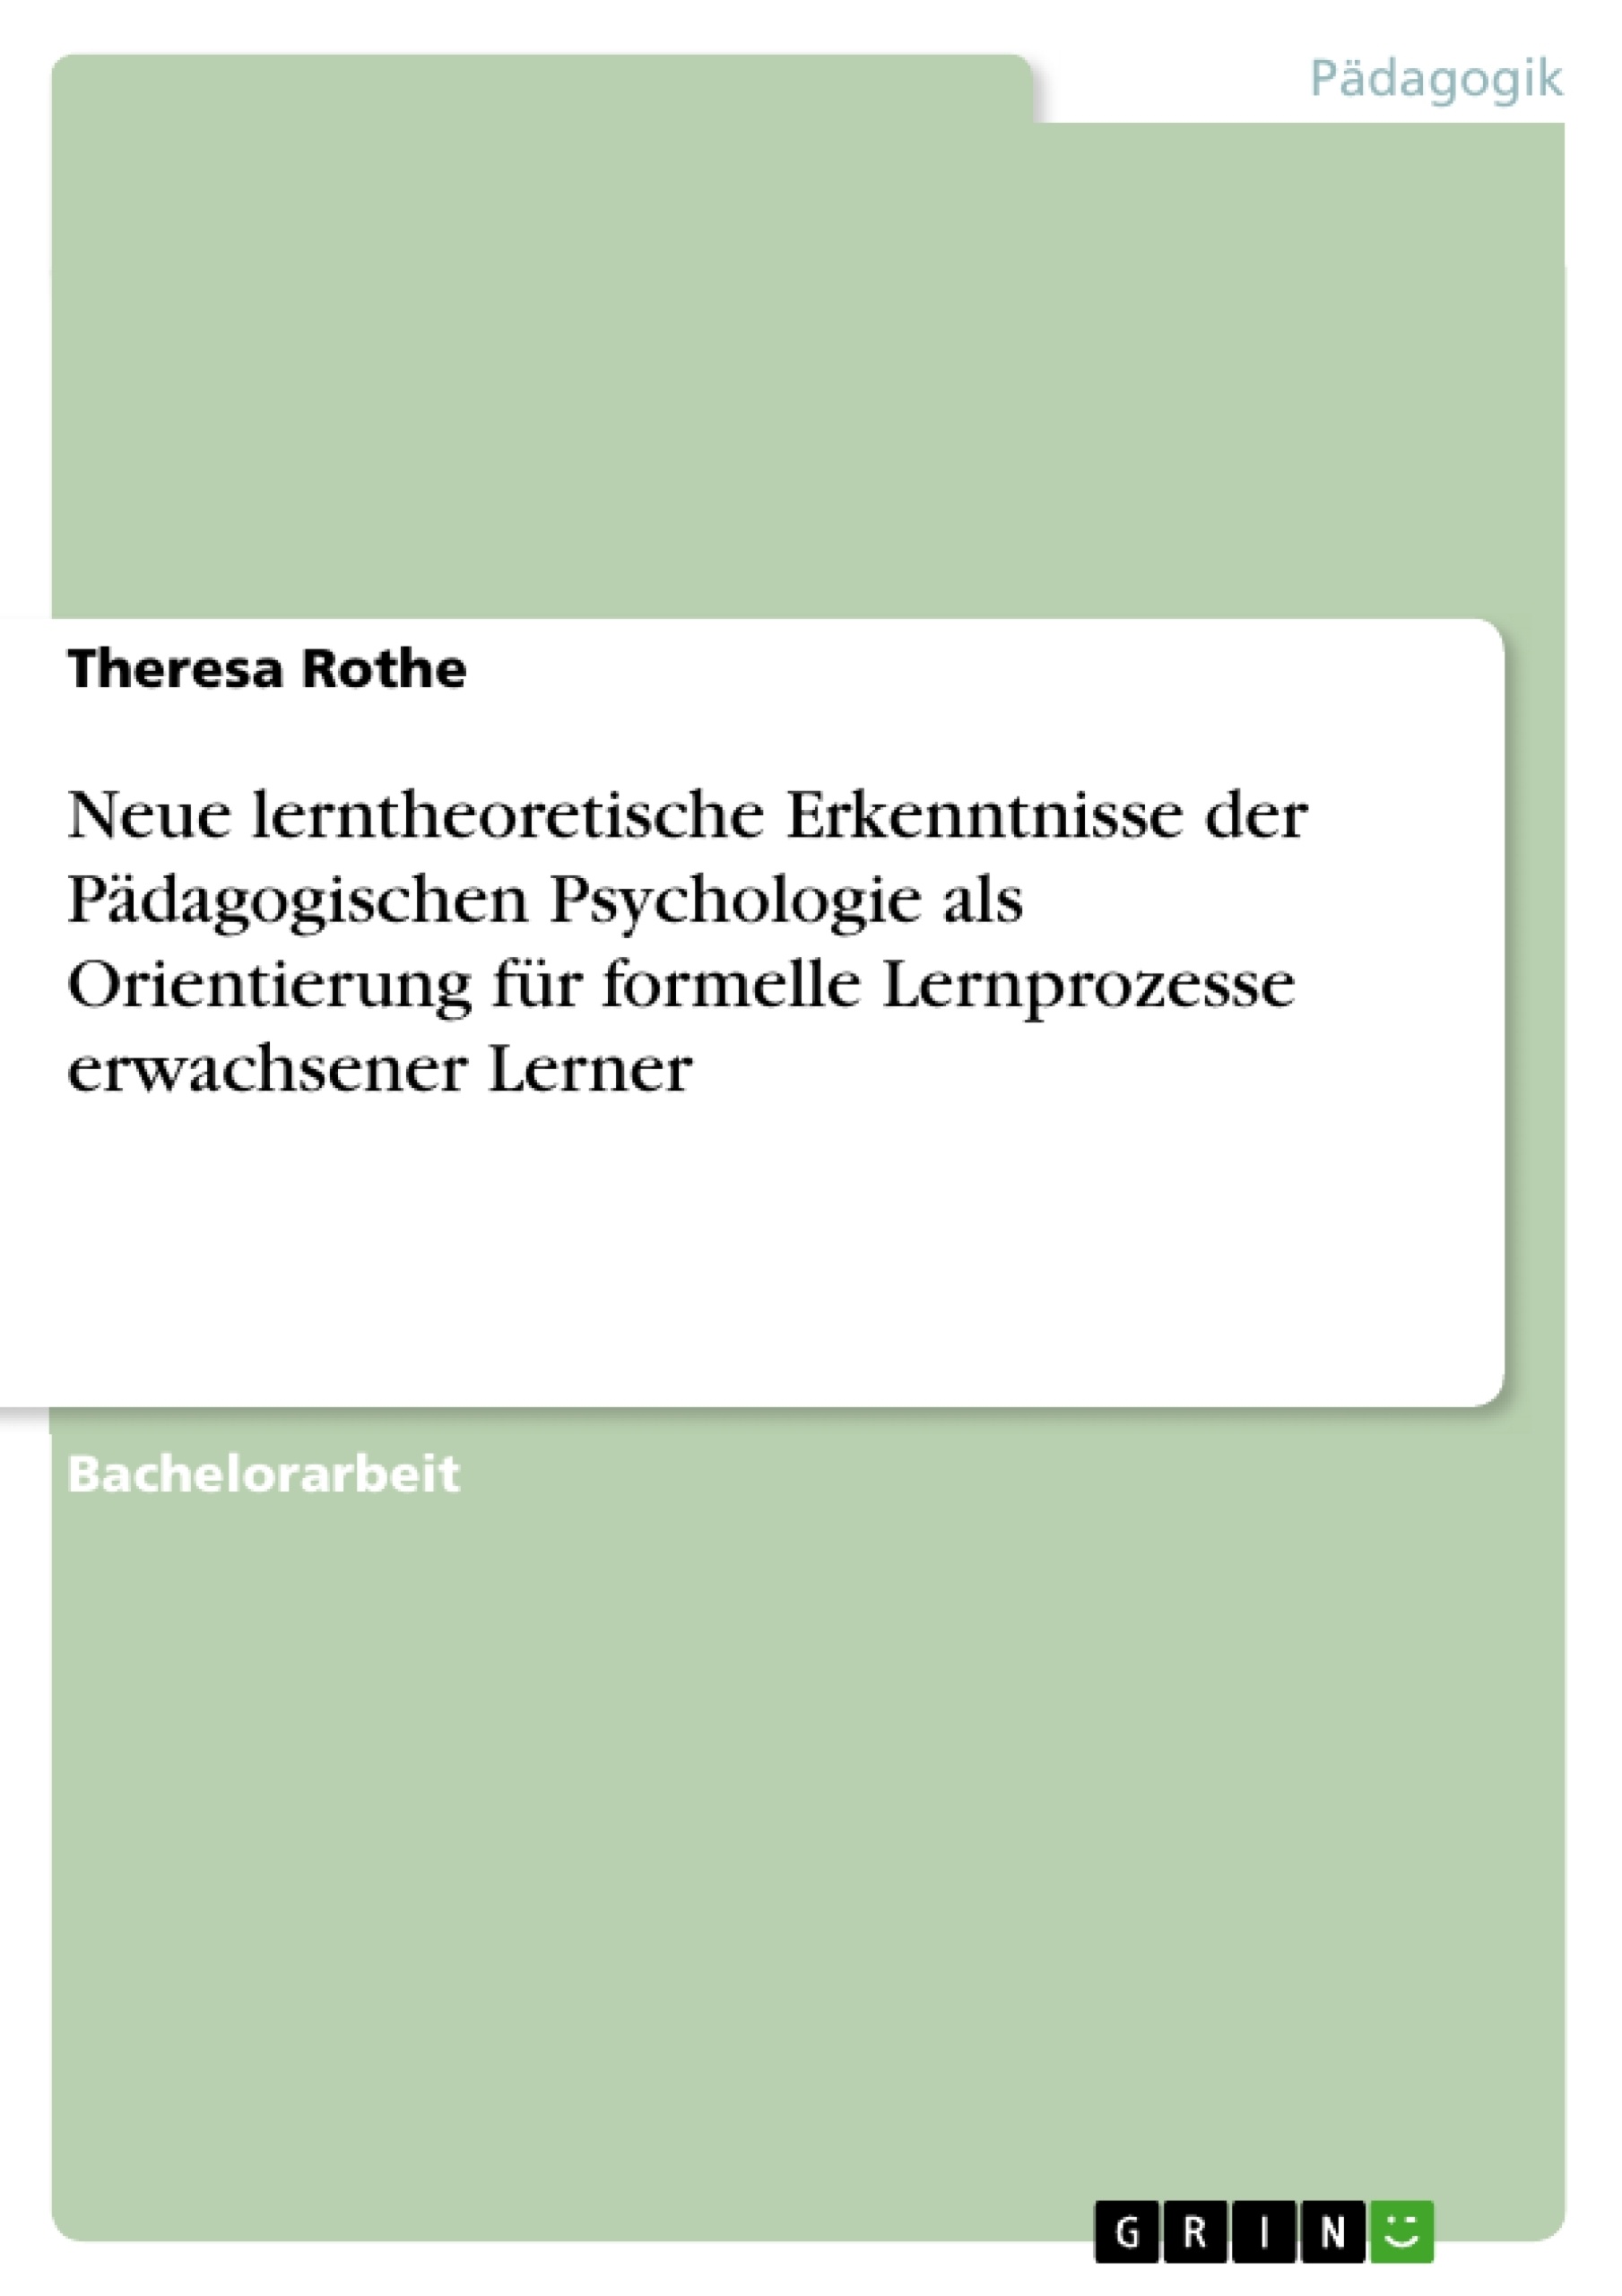 Título: Neue lerntheoretische Erkenntnisse der Pädagogischen Psychologie als Orientierung für formelle Lernprozesse erwachsener Lerner